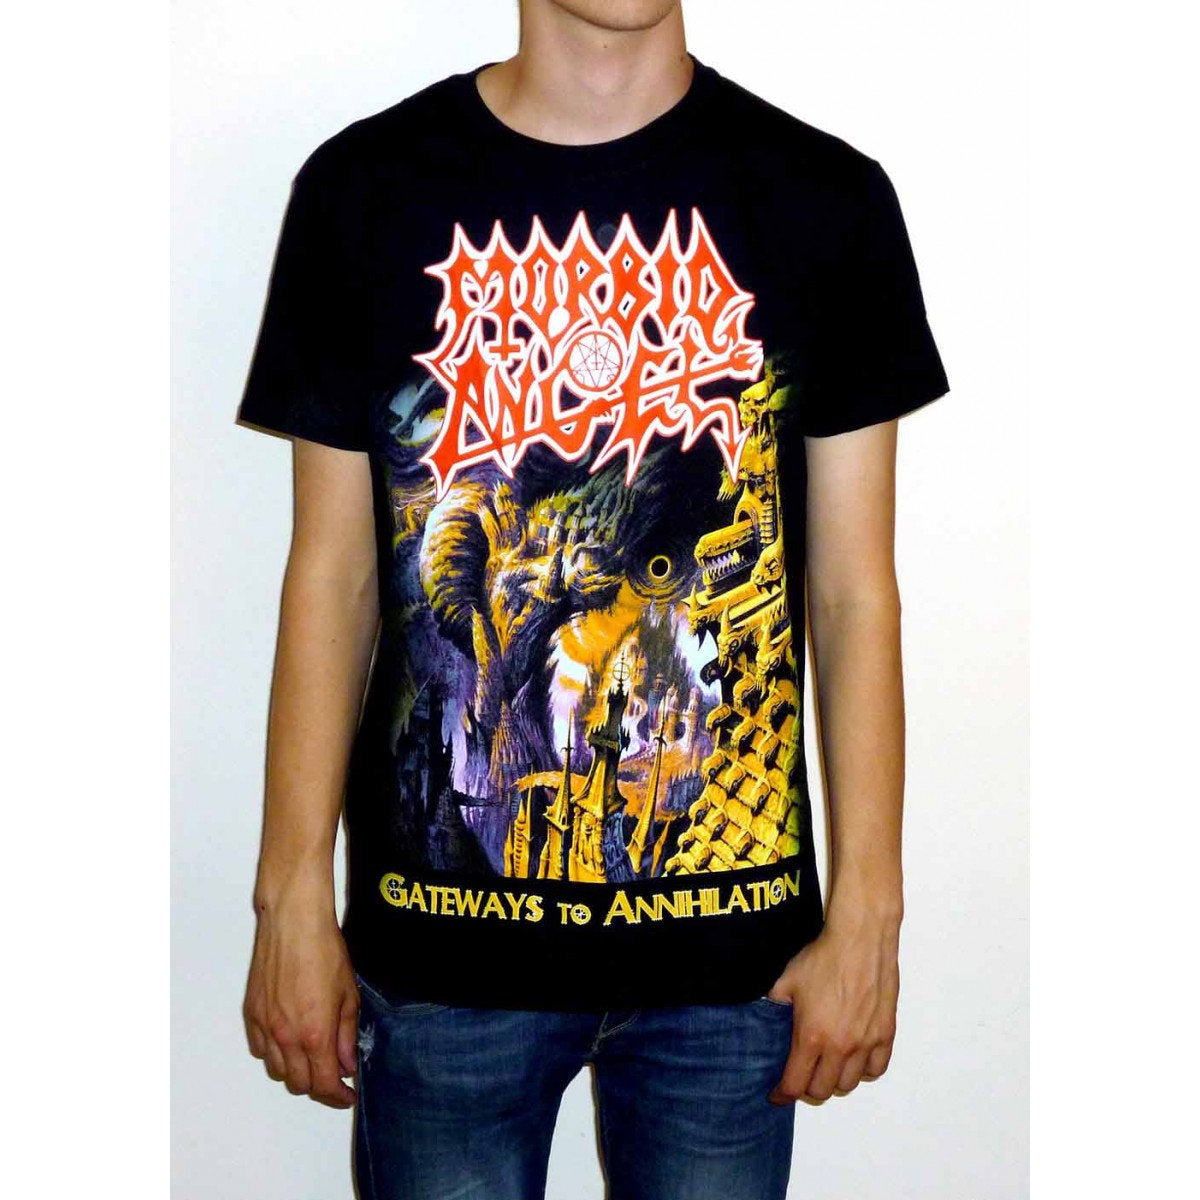 Morbid Angel "Gateways To Annihilation" T-shirt